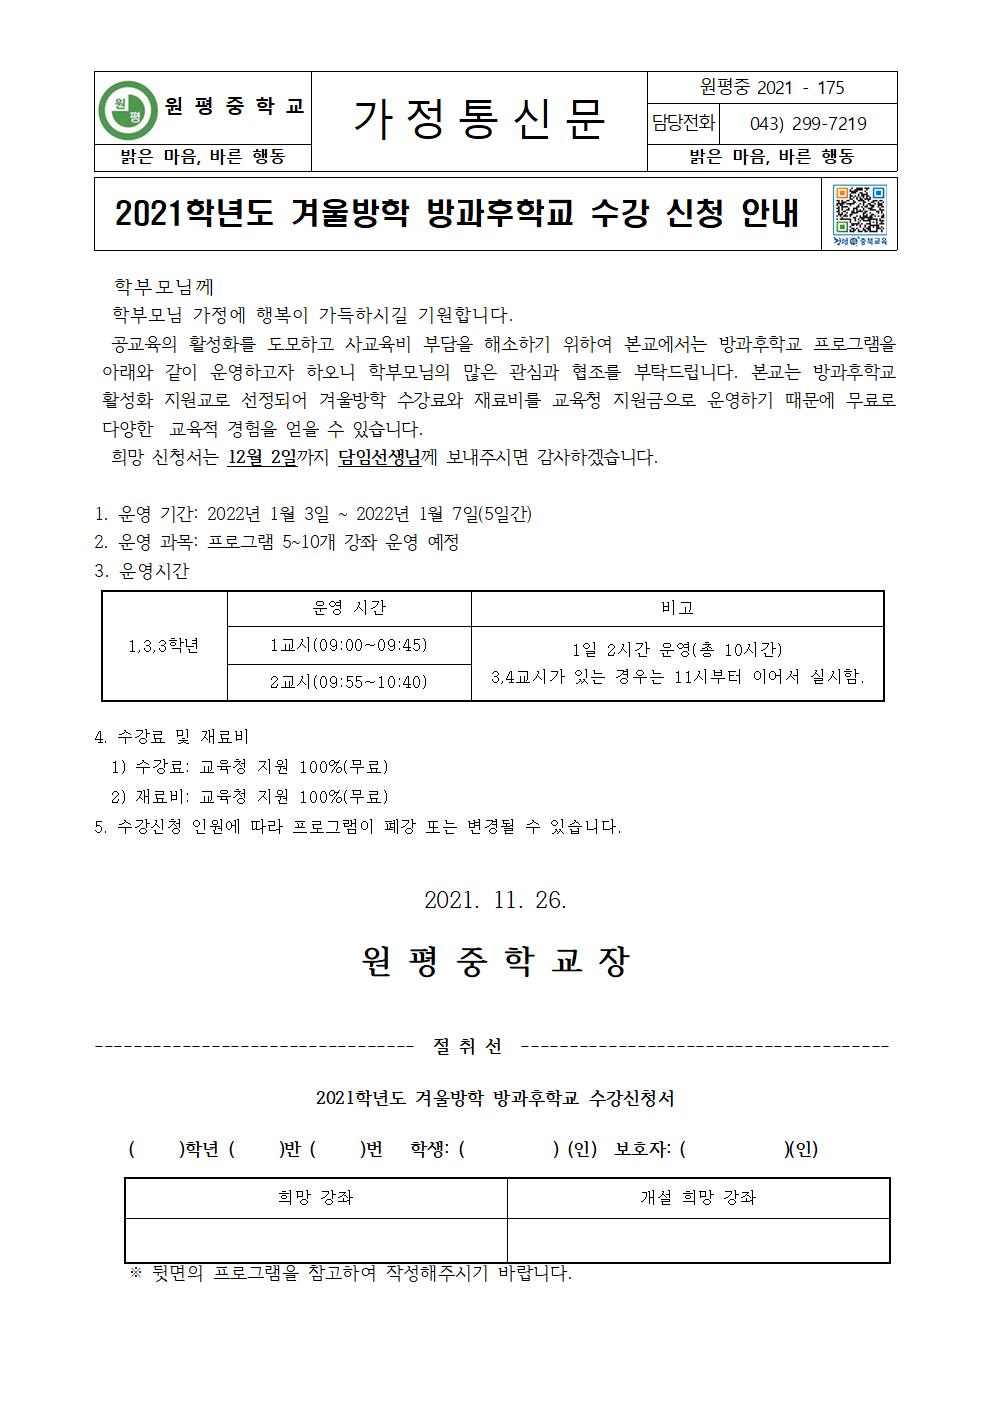 가정통신문(2021학년도 겨울방학 방과후학교 신청 안내)(1)001